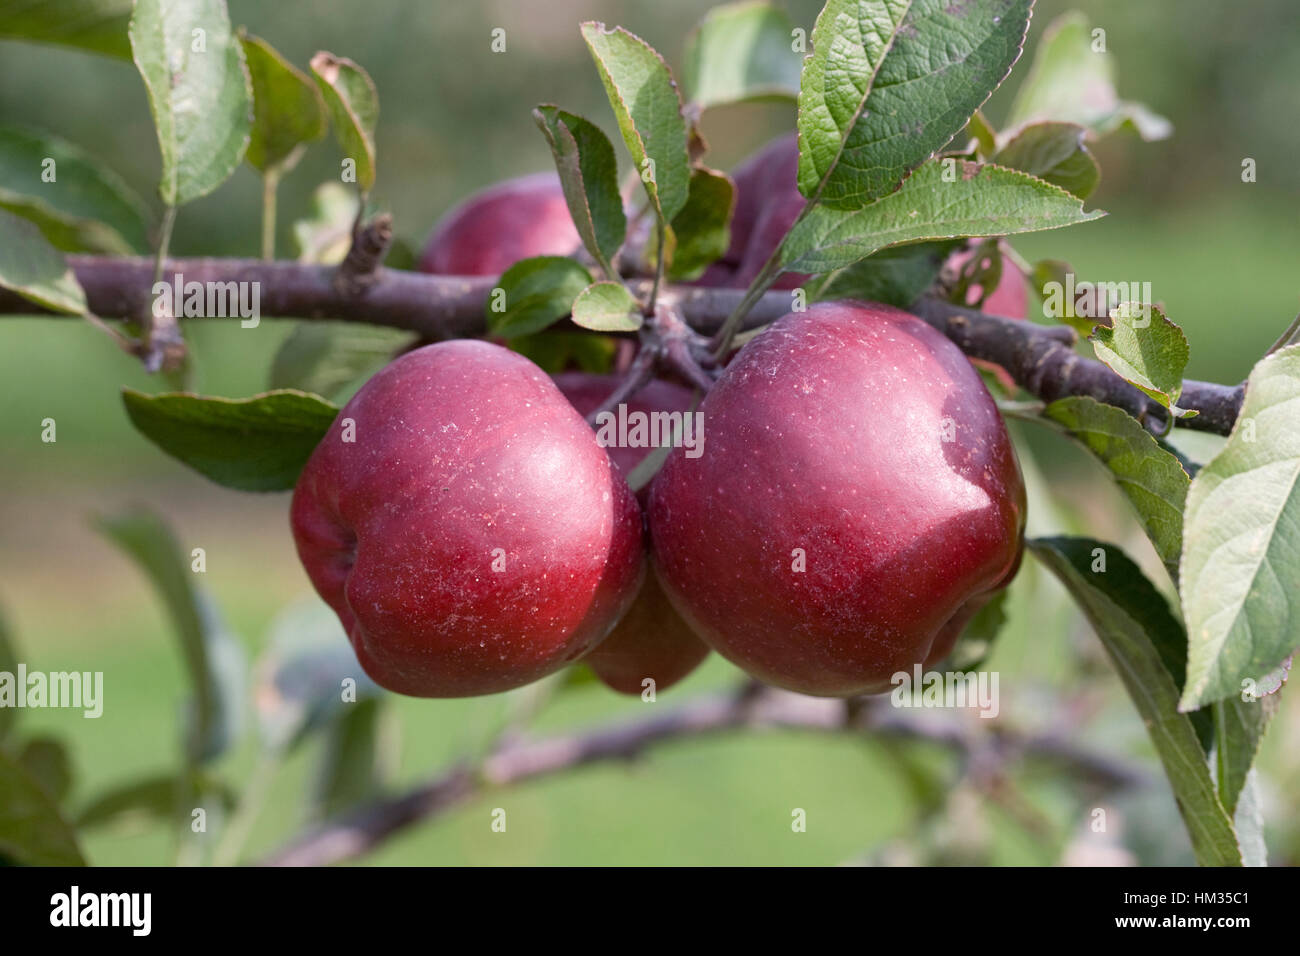 Malus domestica 'Starkrimson delicious'. Apples on a tree. Stock Photo